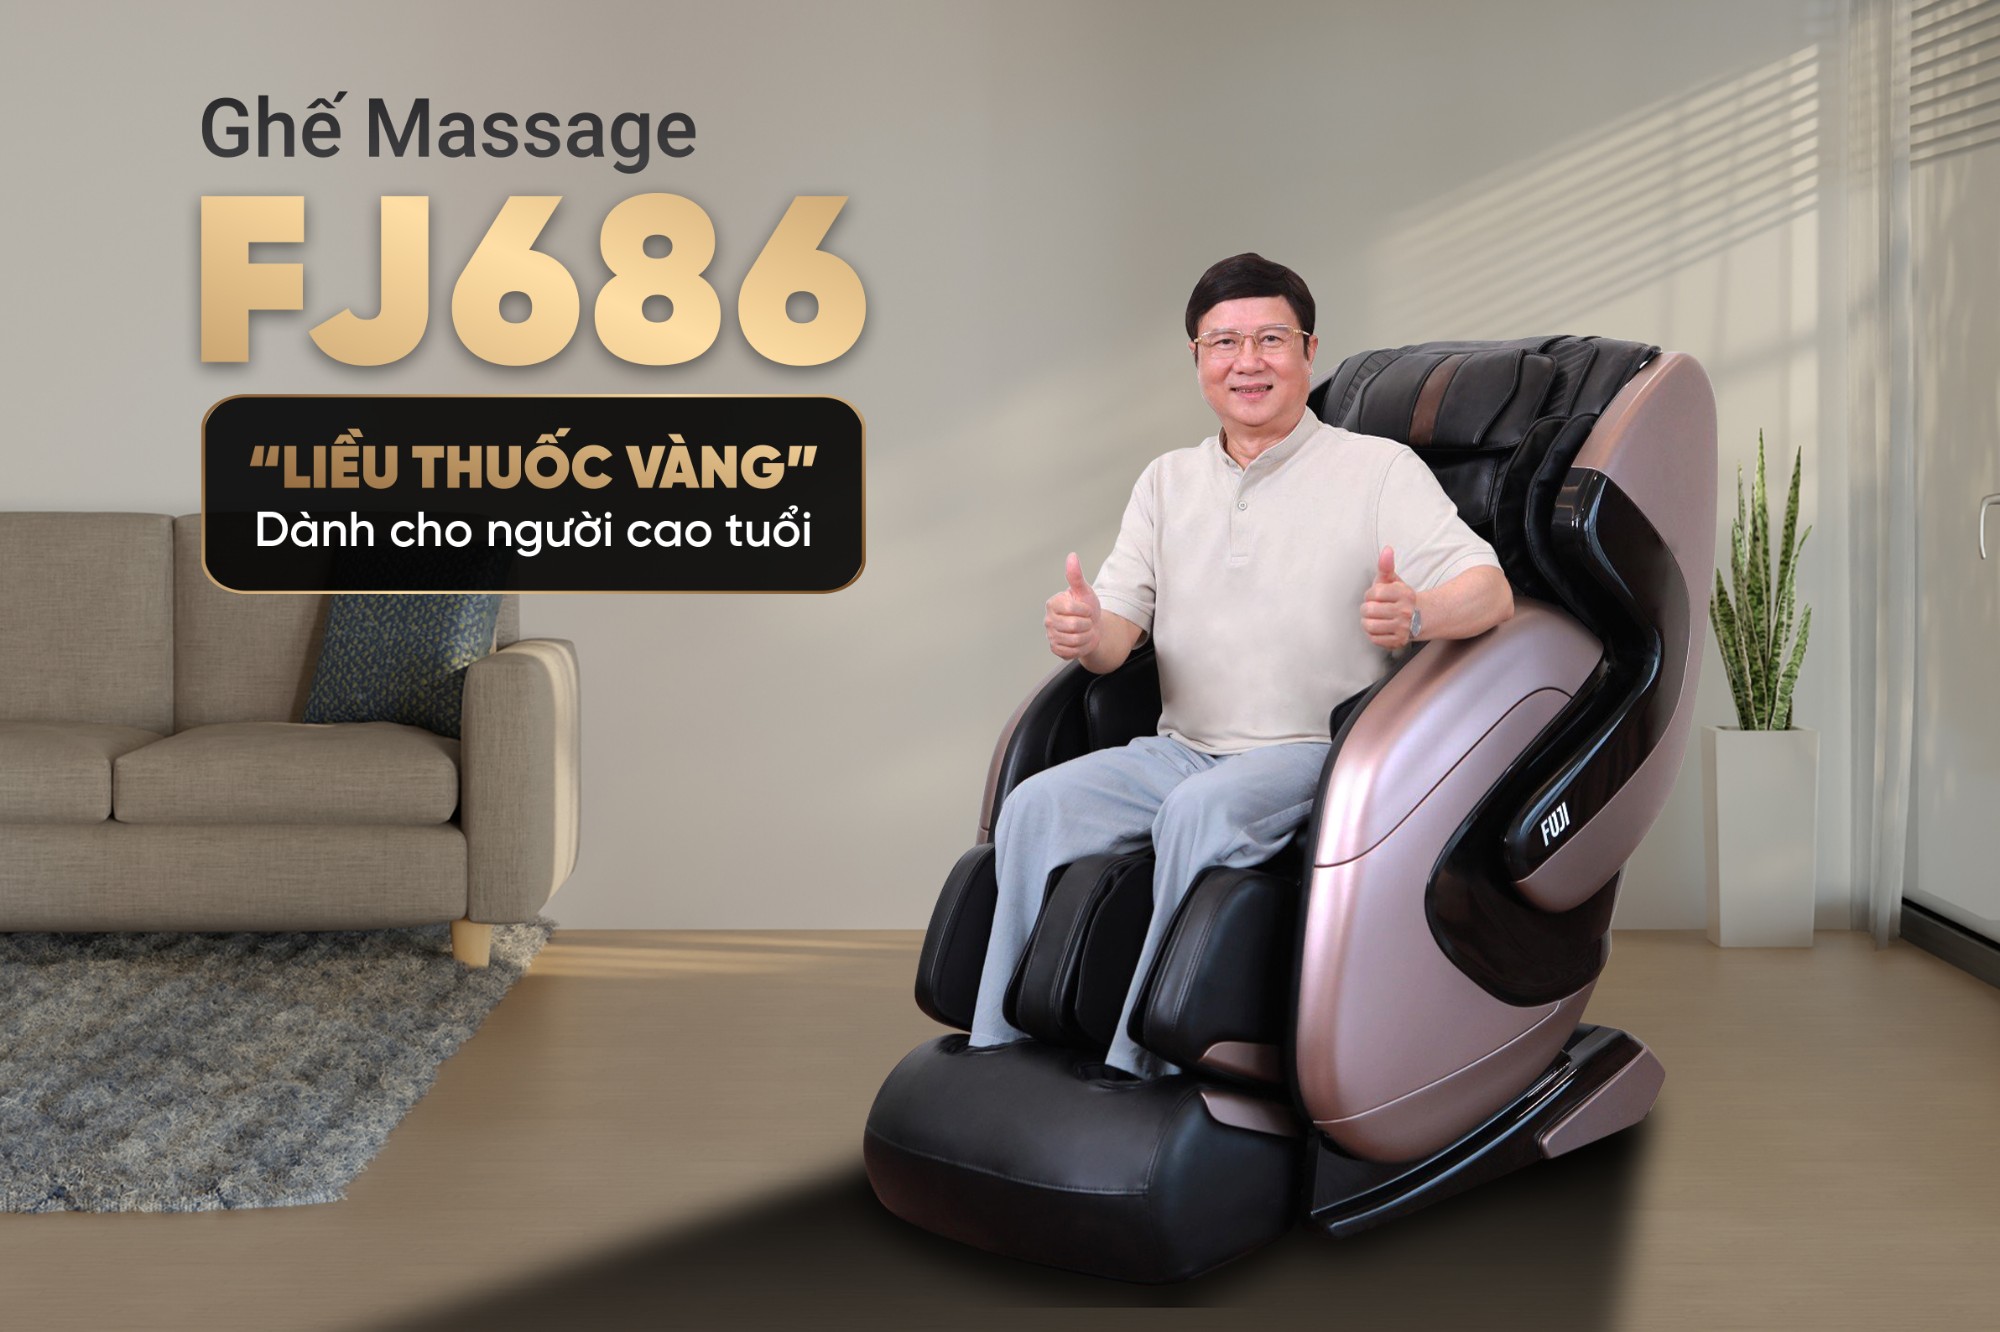 Ghế Massage FJ686 - “Liều thuốc tiên” dành cho người cao tuổi